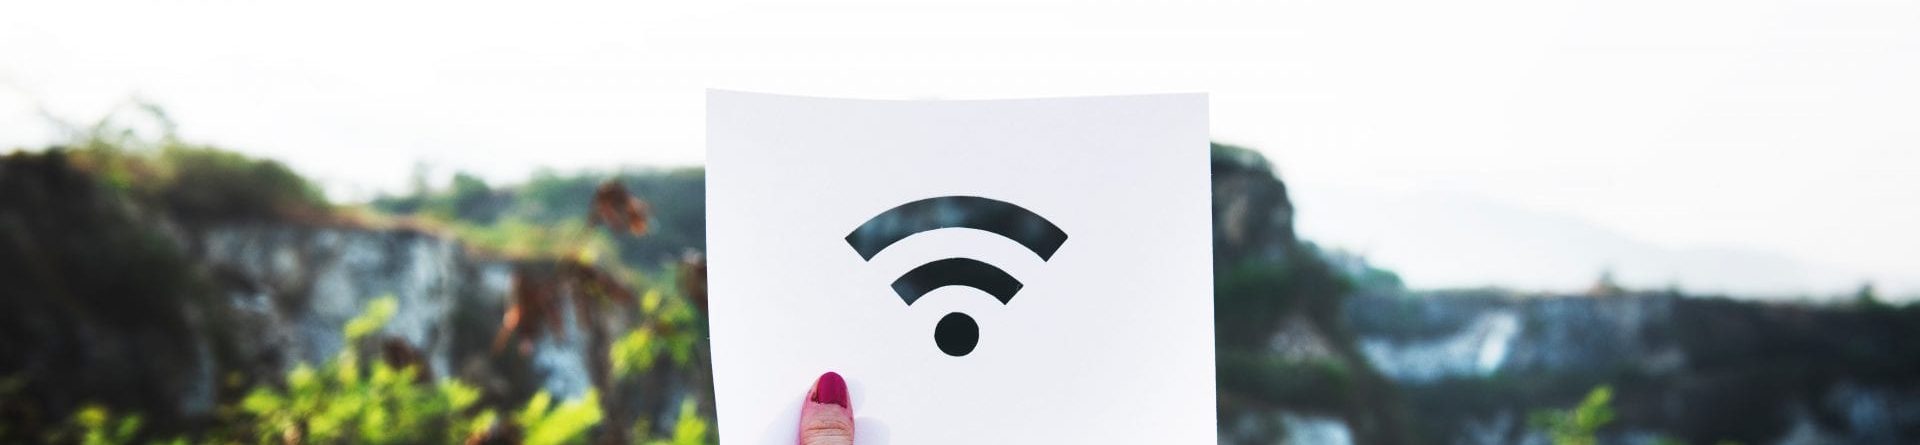 Бесплатный Wi-Fi в Новой Зеландии